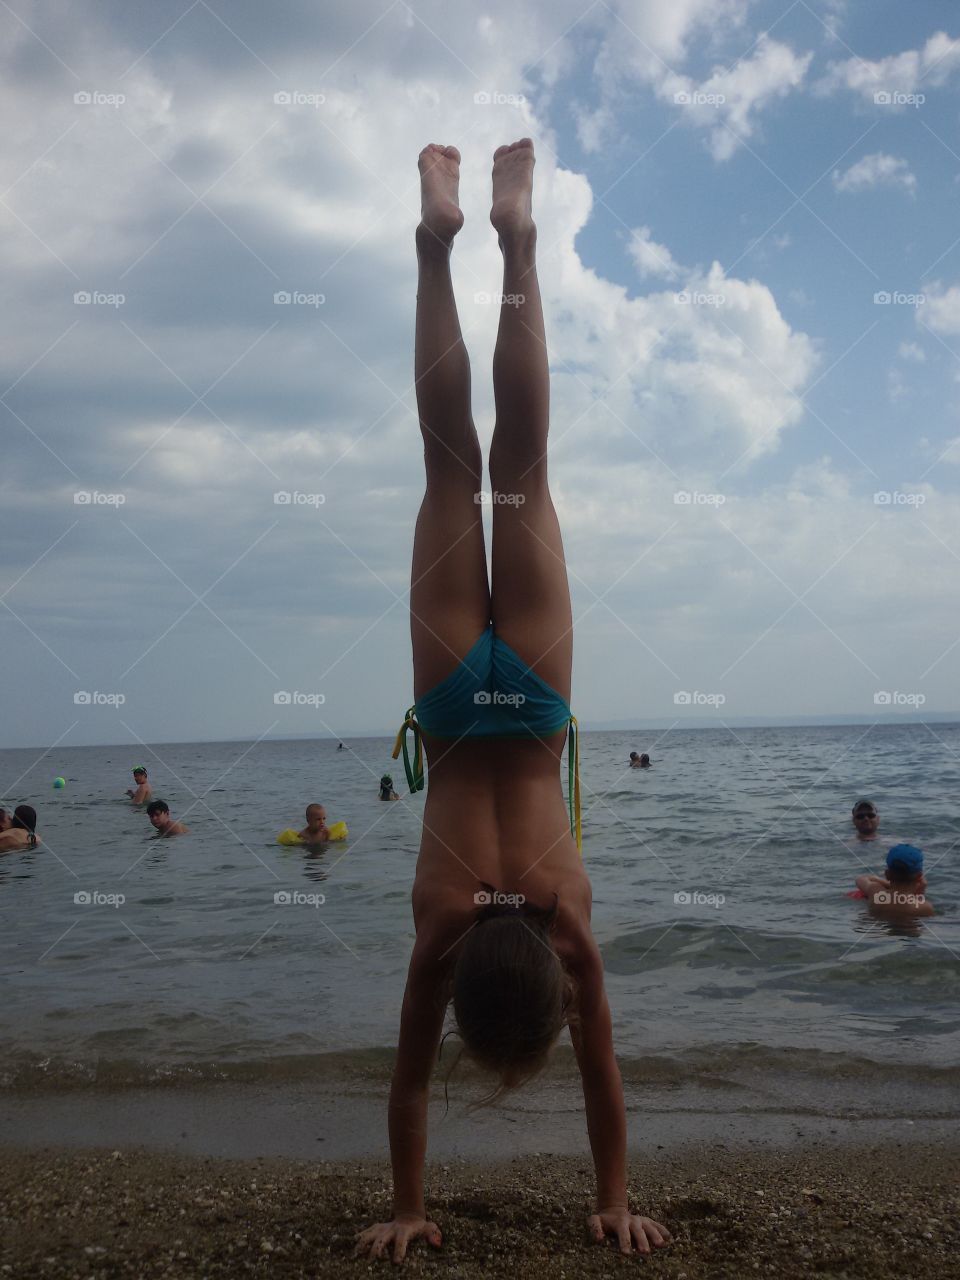 Gymnastic on the beach